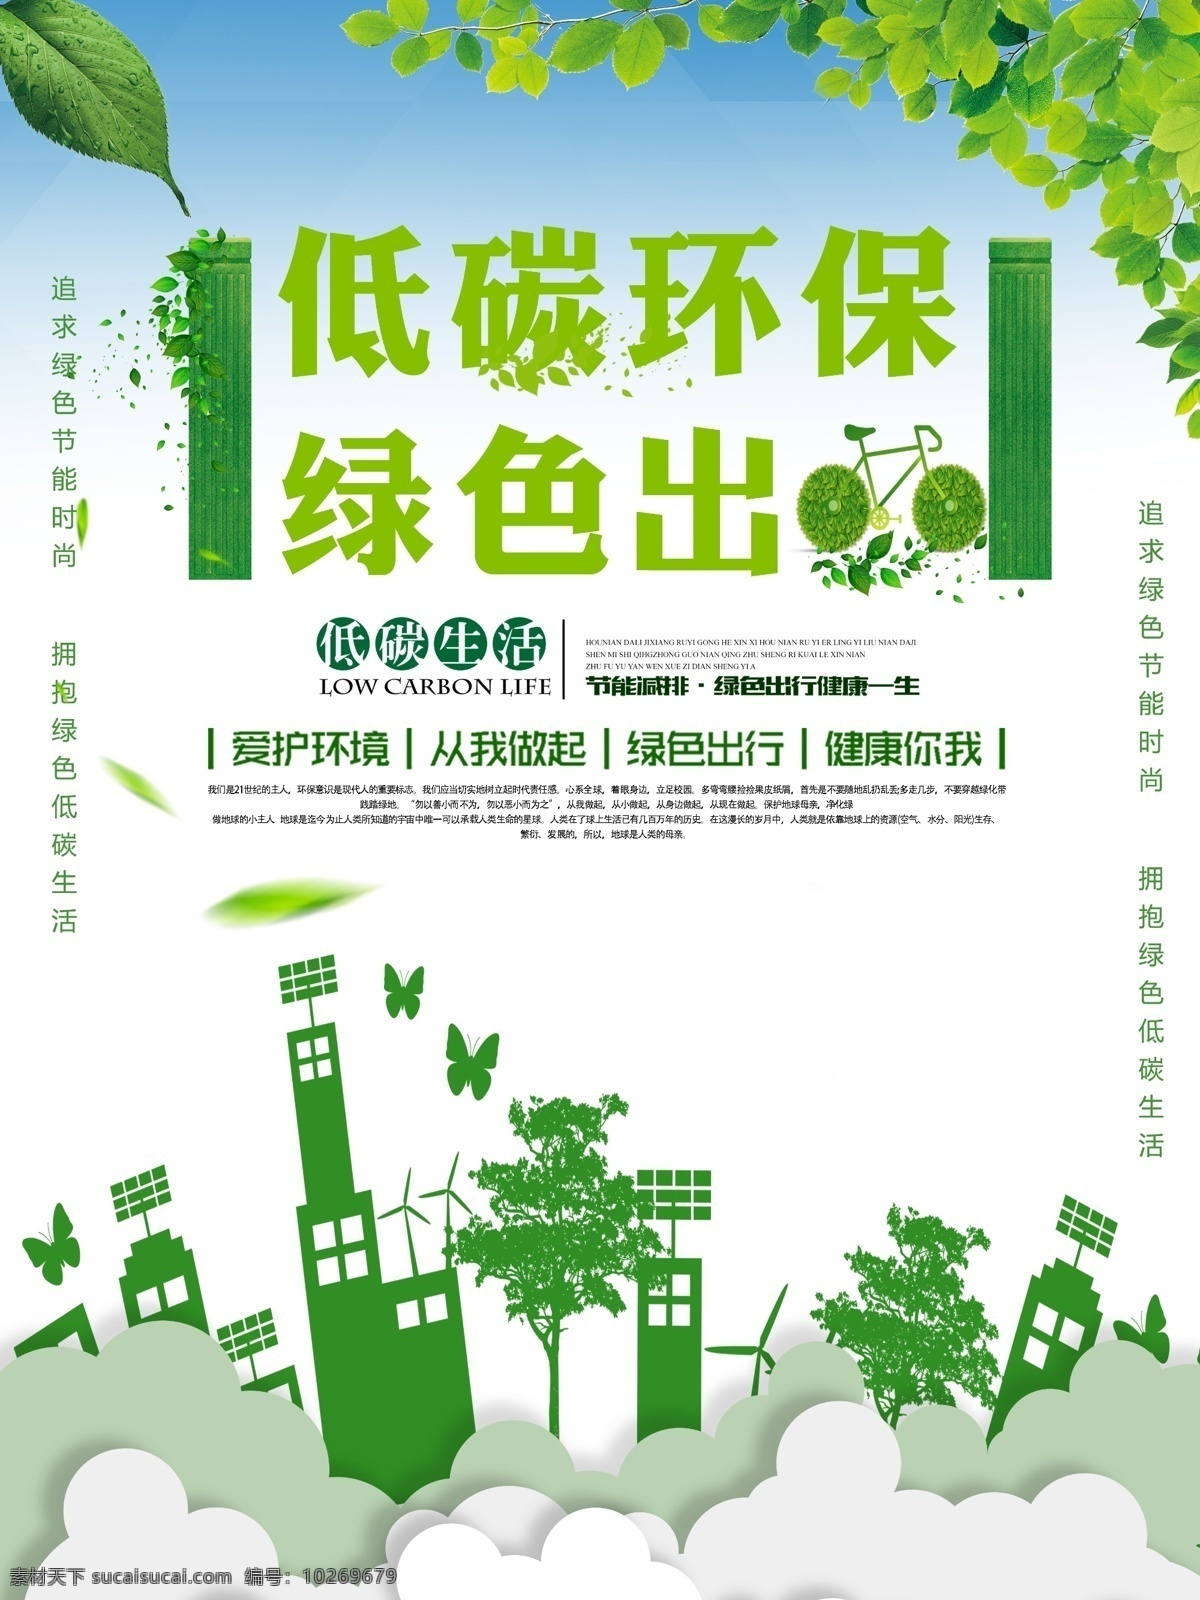 绿色 大气 低 碳 环保 公益 海报 低碳环保 环保海报 环保广告 环保公益广告 环保设计 低碳环保海报 低碳公益广告